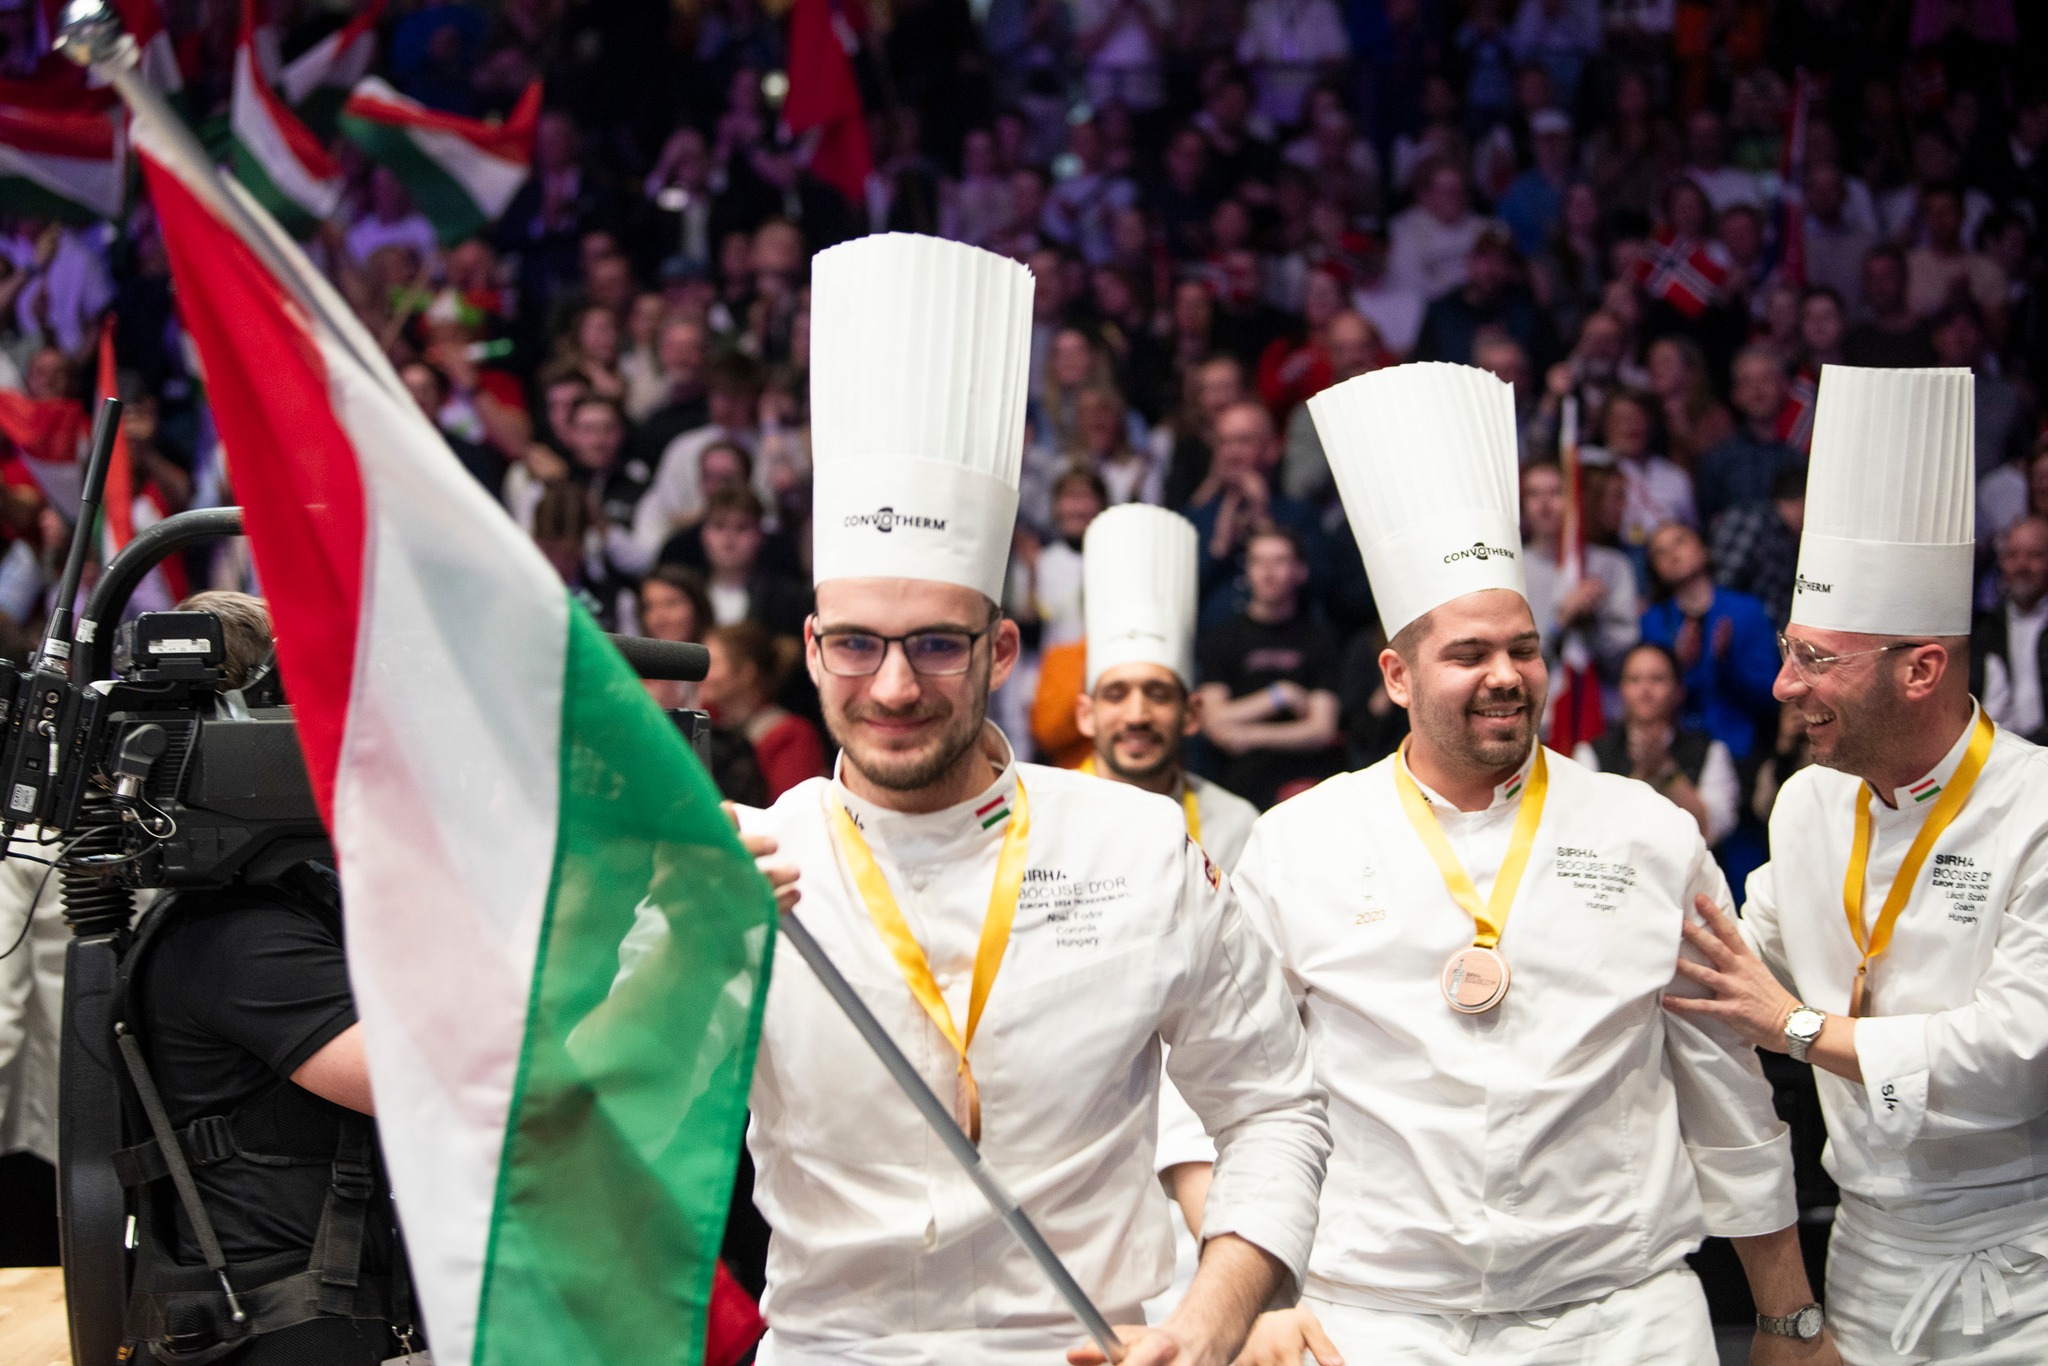 Kiválóan szerepelt a Bocuse d’Or európai versenyén a siófoki szakács